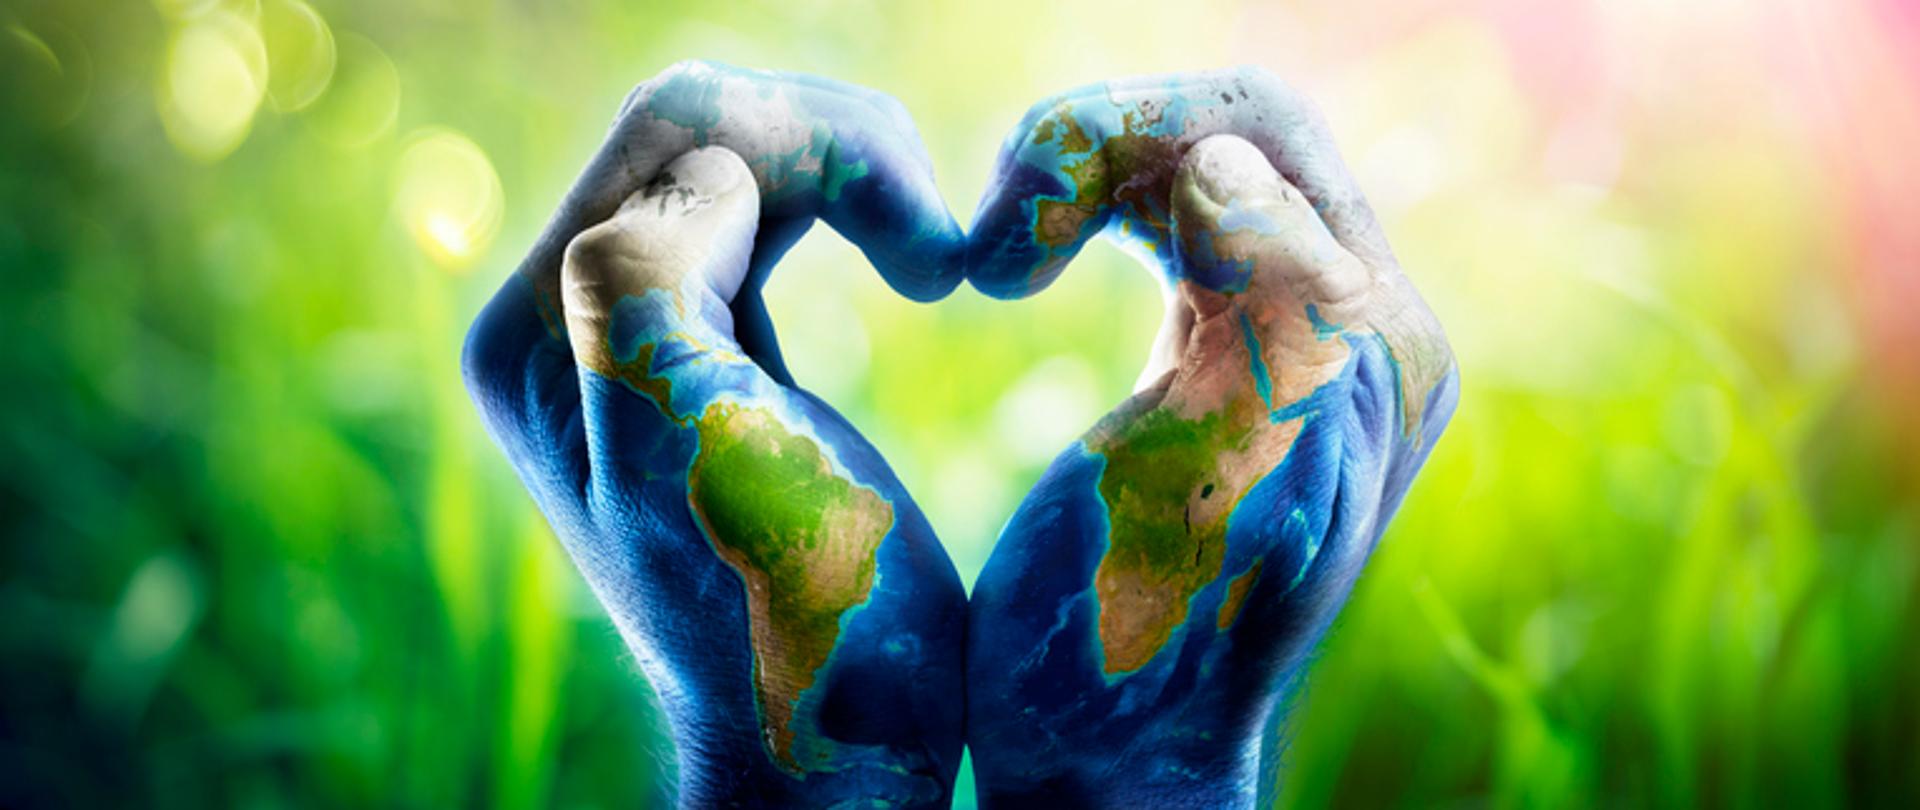 Ludzkie ręce kształtujące serce. Ręce są pomalowane, wzorzyste i przedstawiają mapę świata na tle z przewagą zieleni.